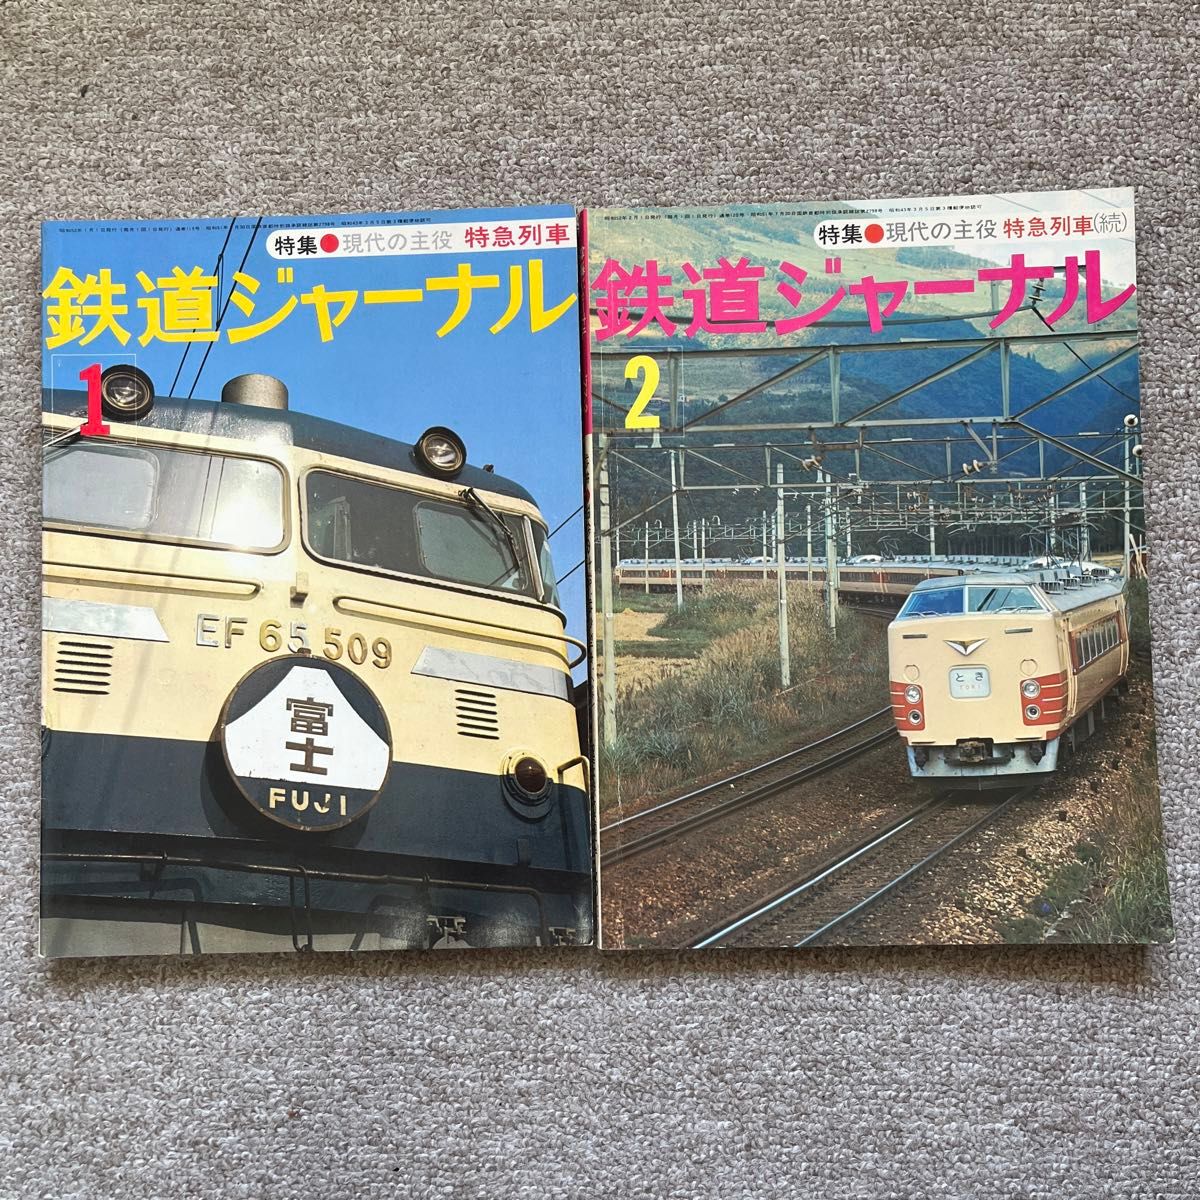 鉄道ジャーナル　No.119,120　1977年 1,2月号　2冊セット